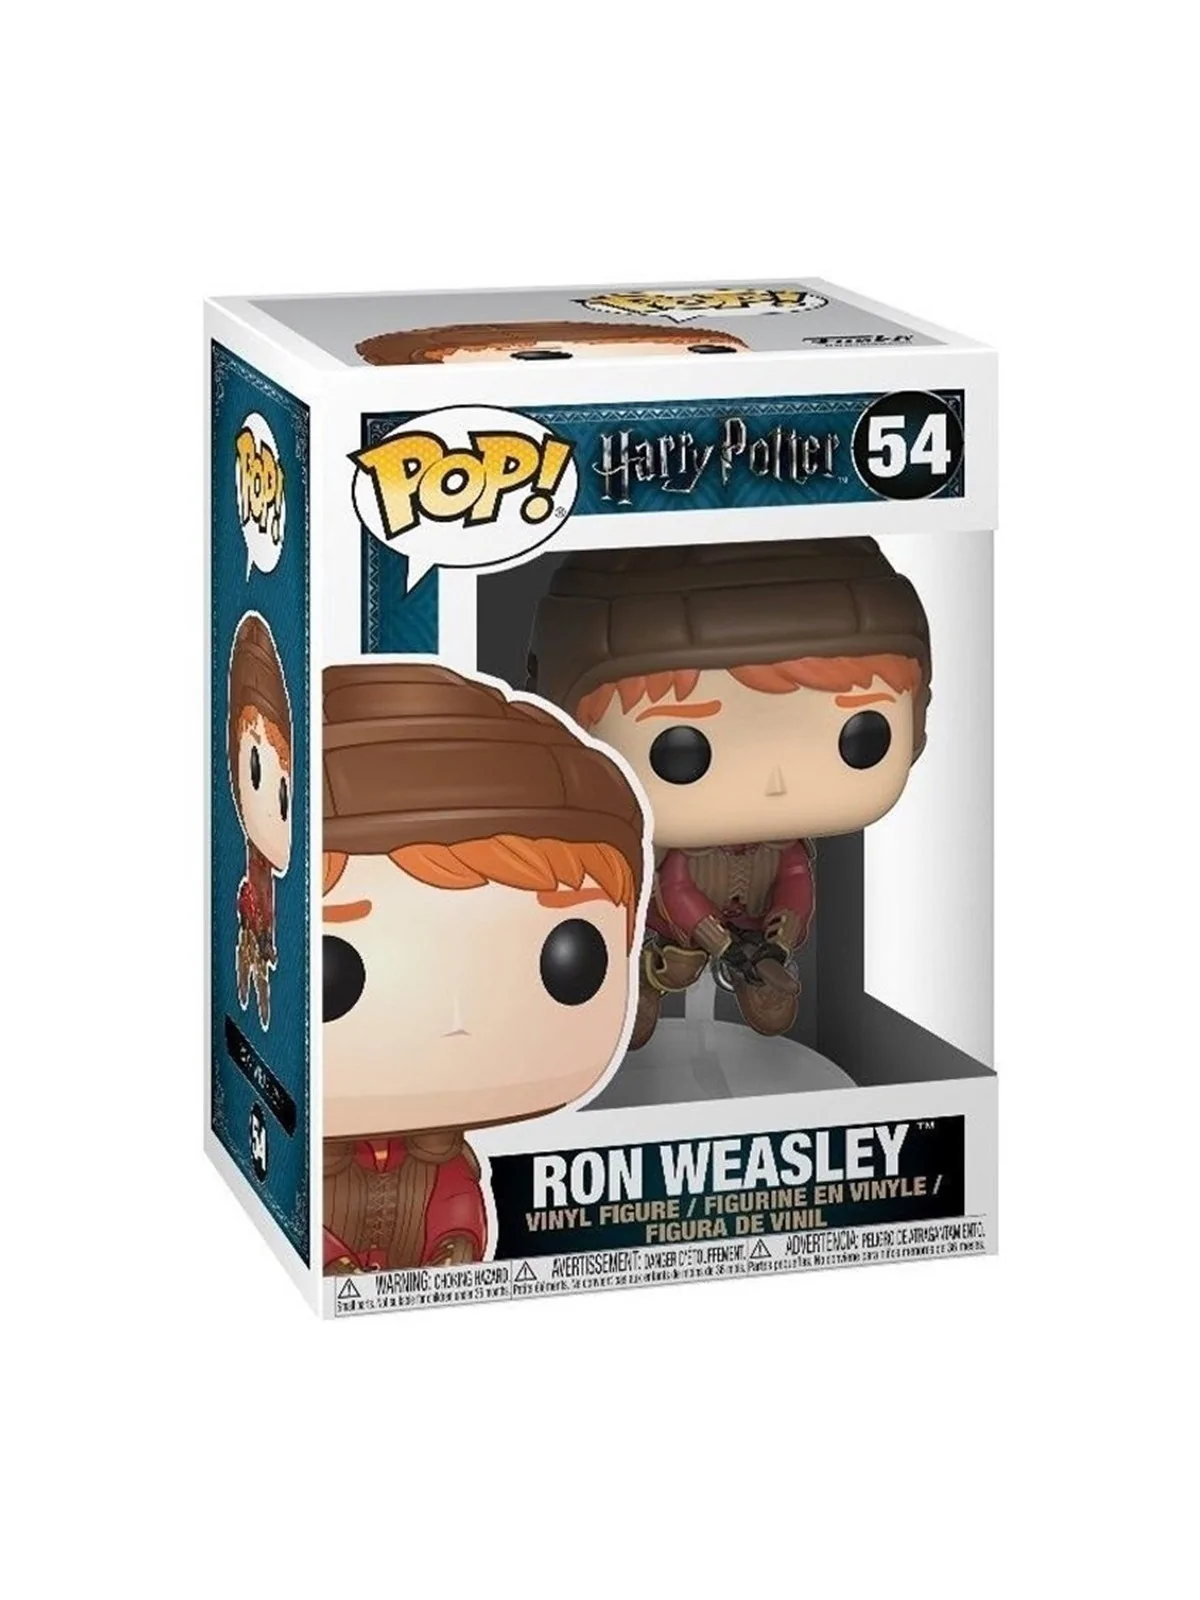 Comprar Funko POP! Harry Potter: Ron Weasley en Escoba (54) barato al 